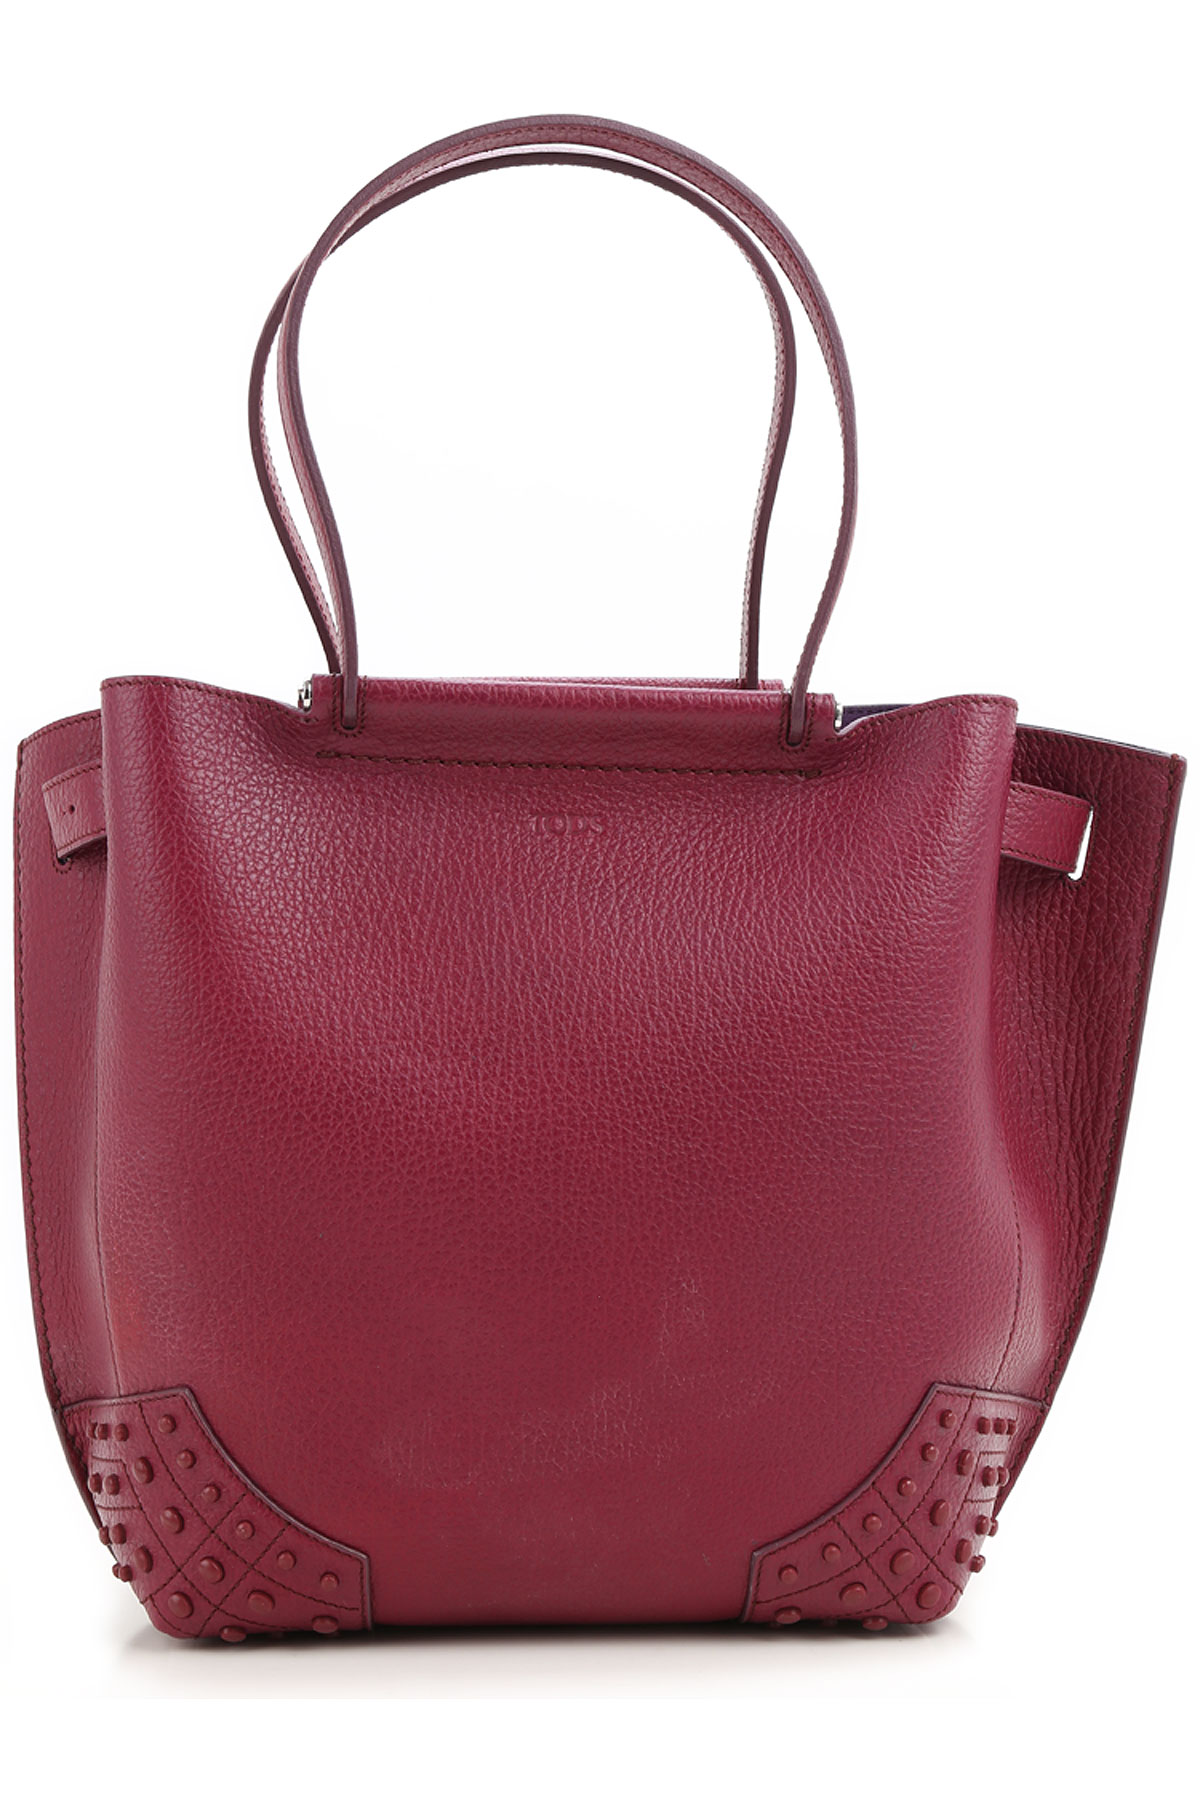 Handbags Tods, Style code: xbwamra3201srkr403--